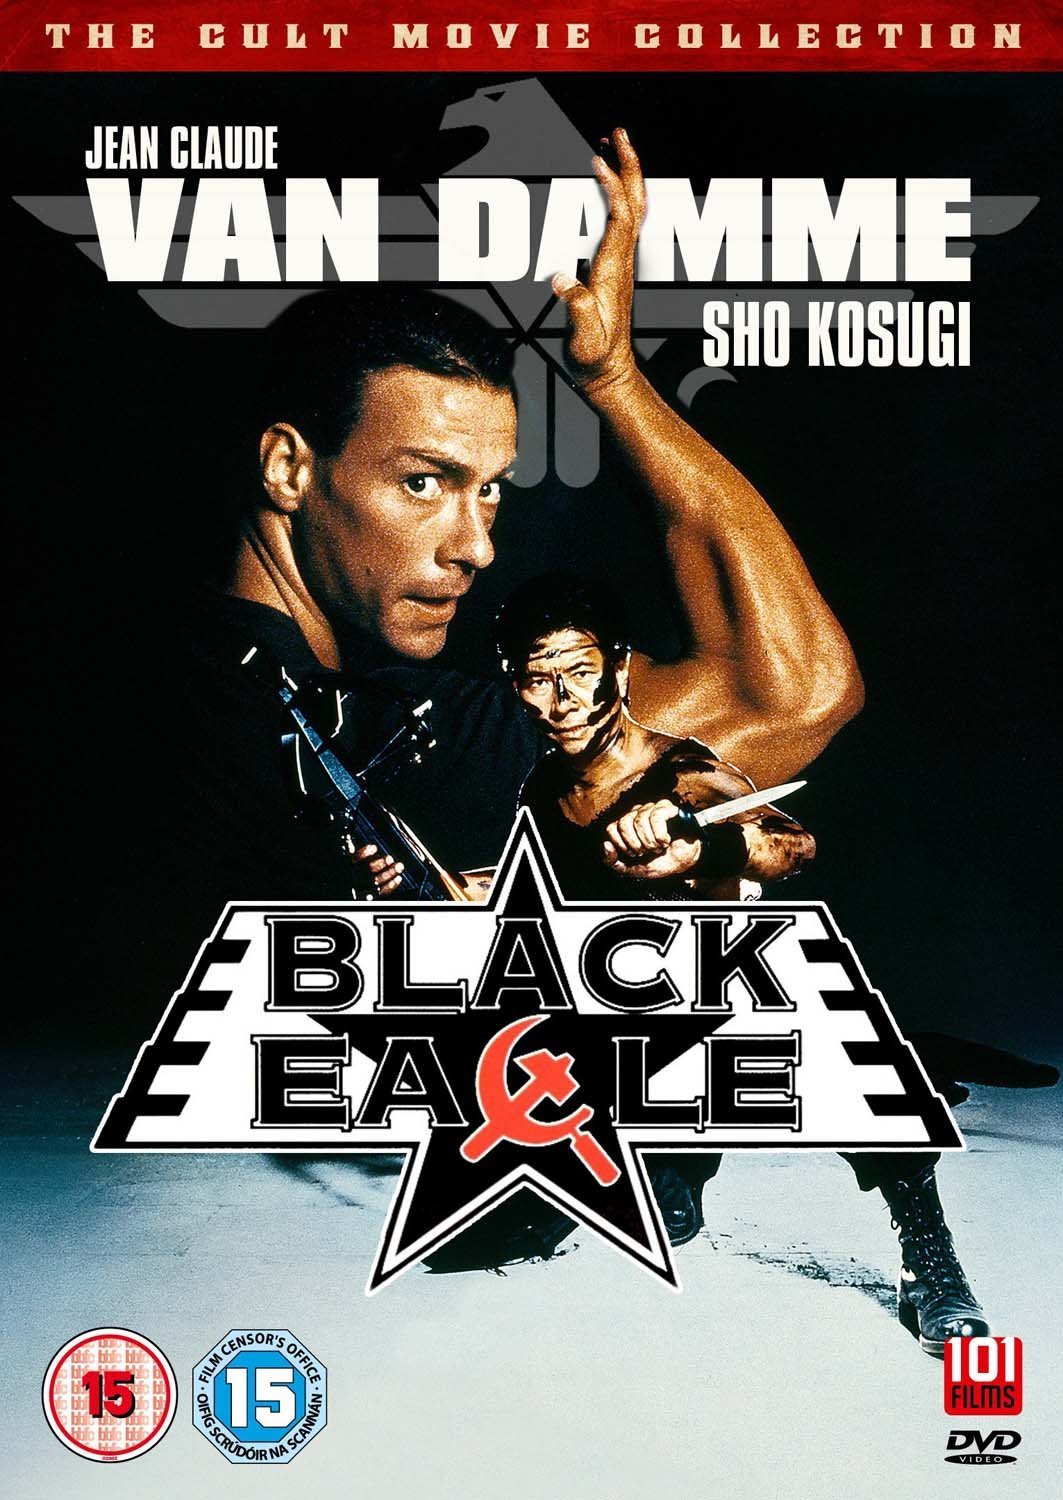 Black Eagle (DVD)